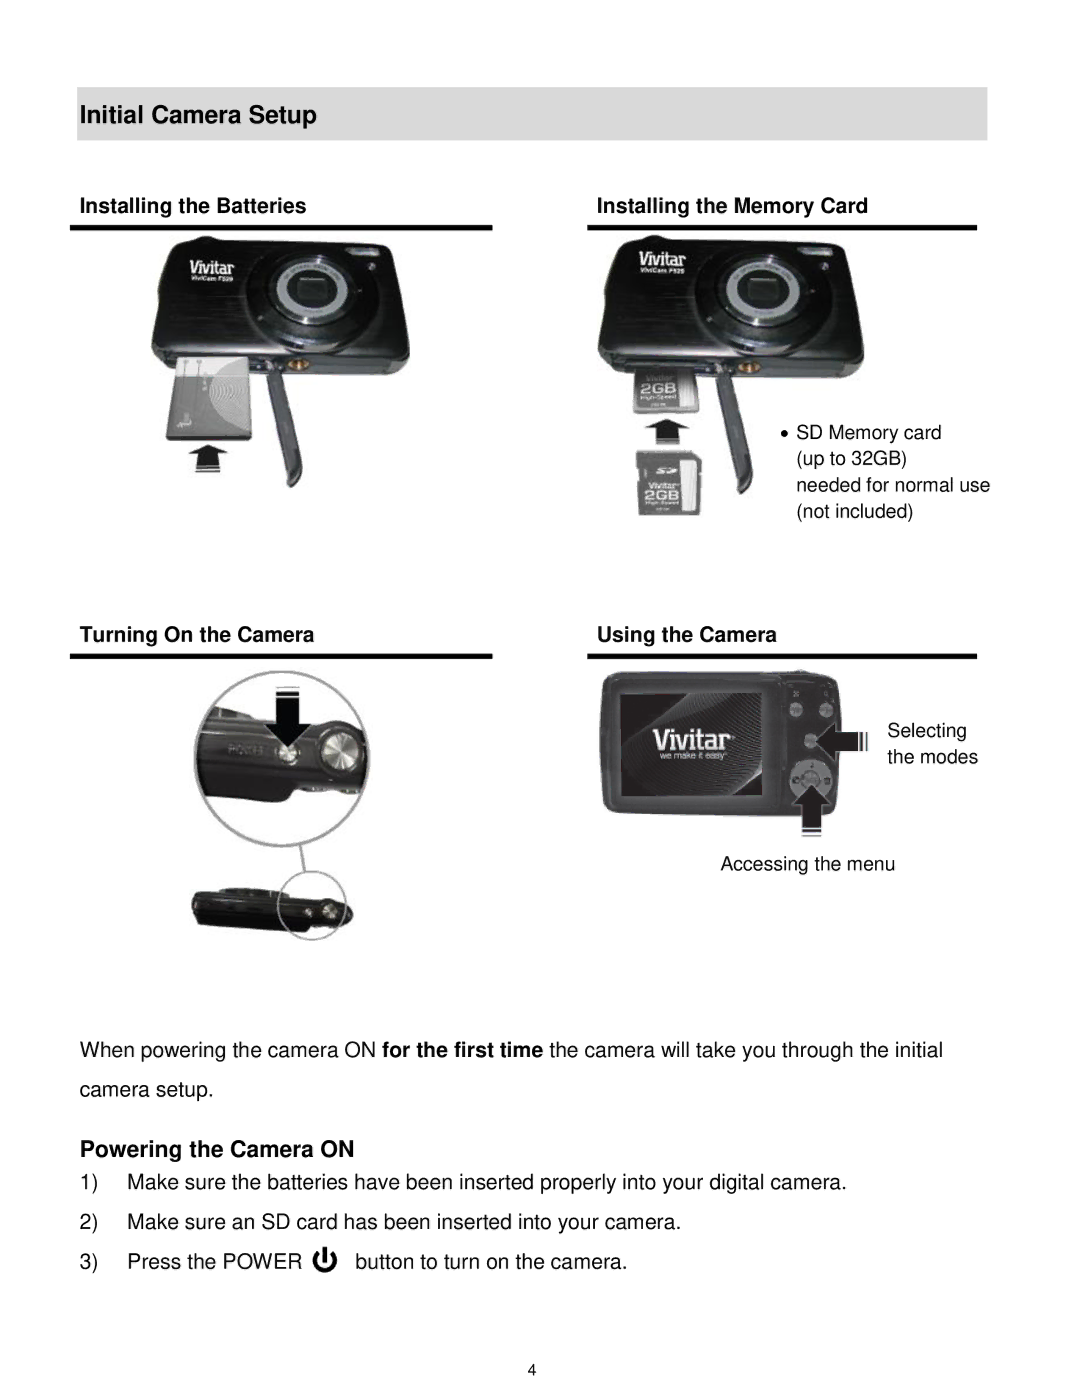 Vivitar S529 user manual Initial Camera Setup, Powering the Camera on 